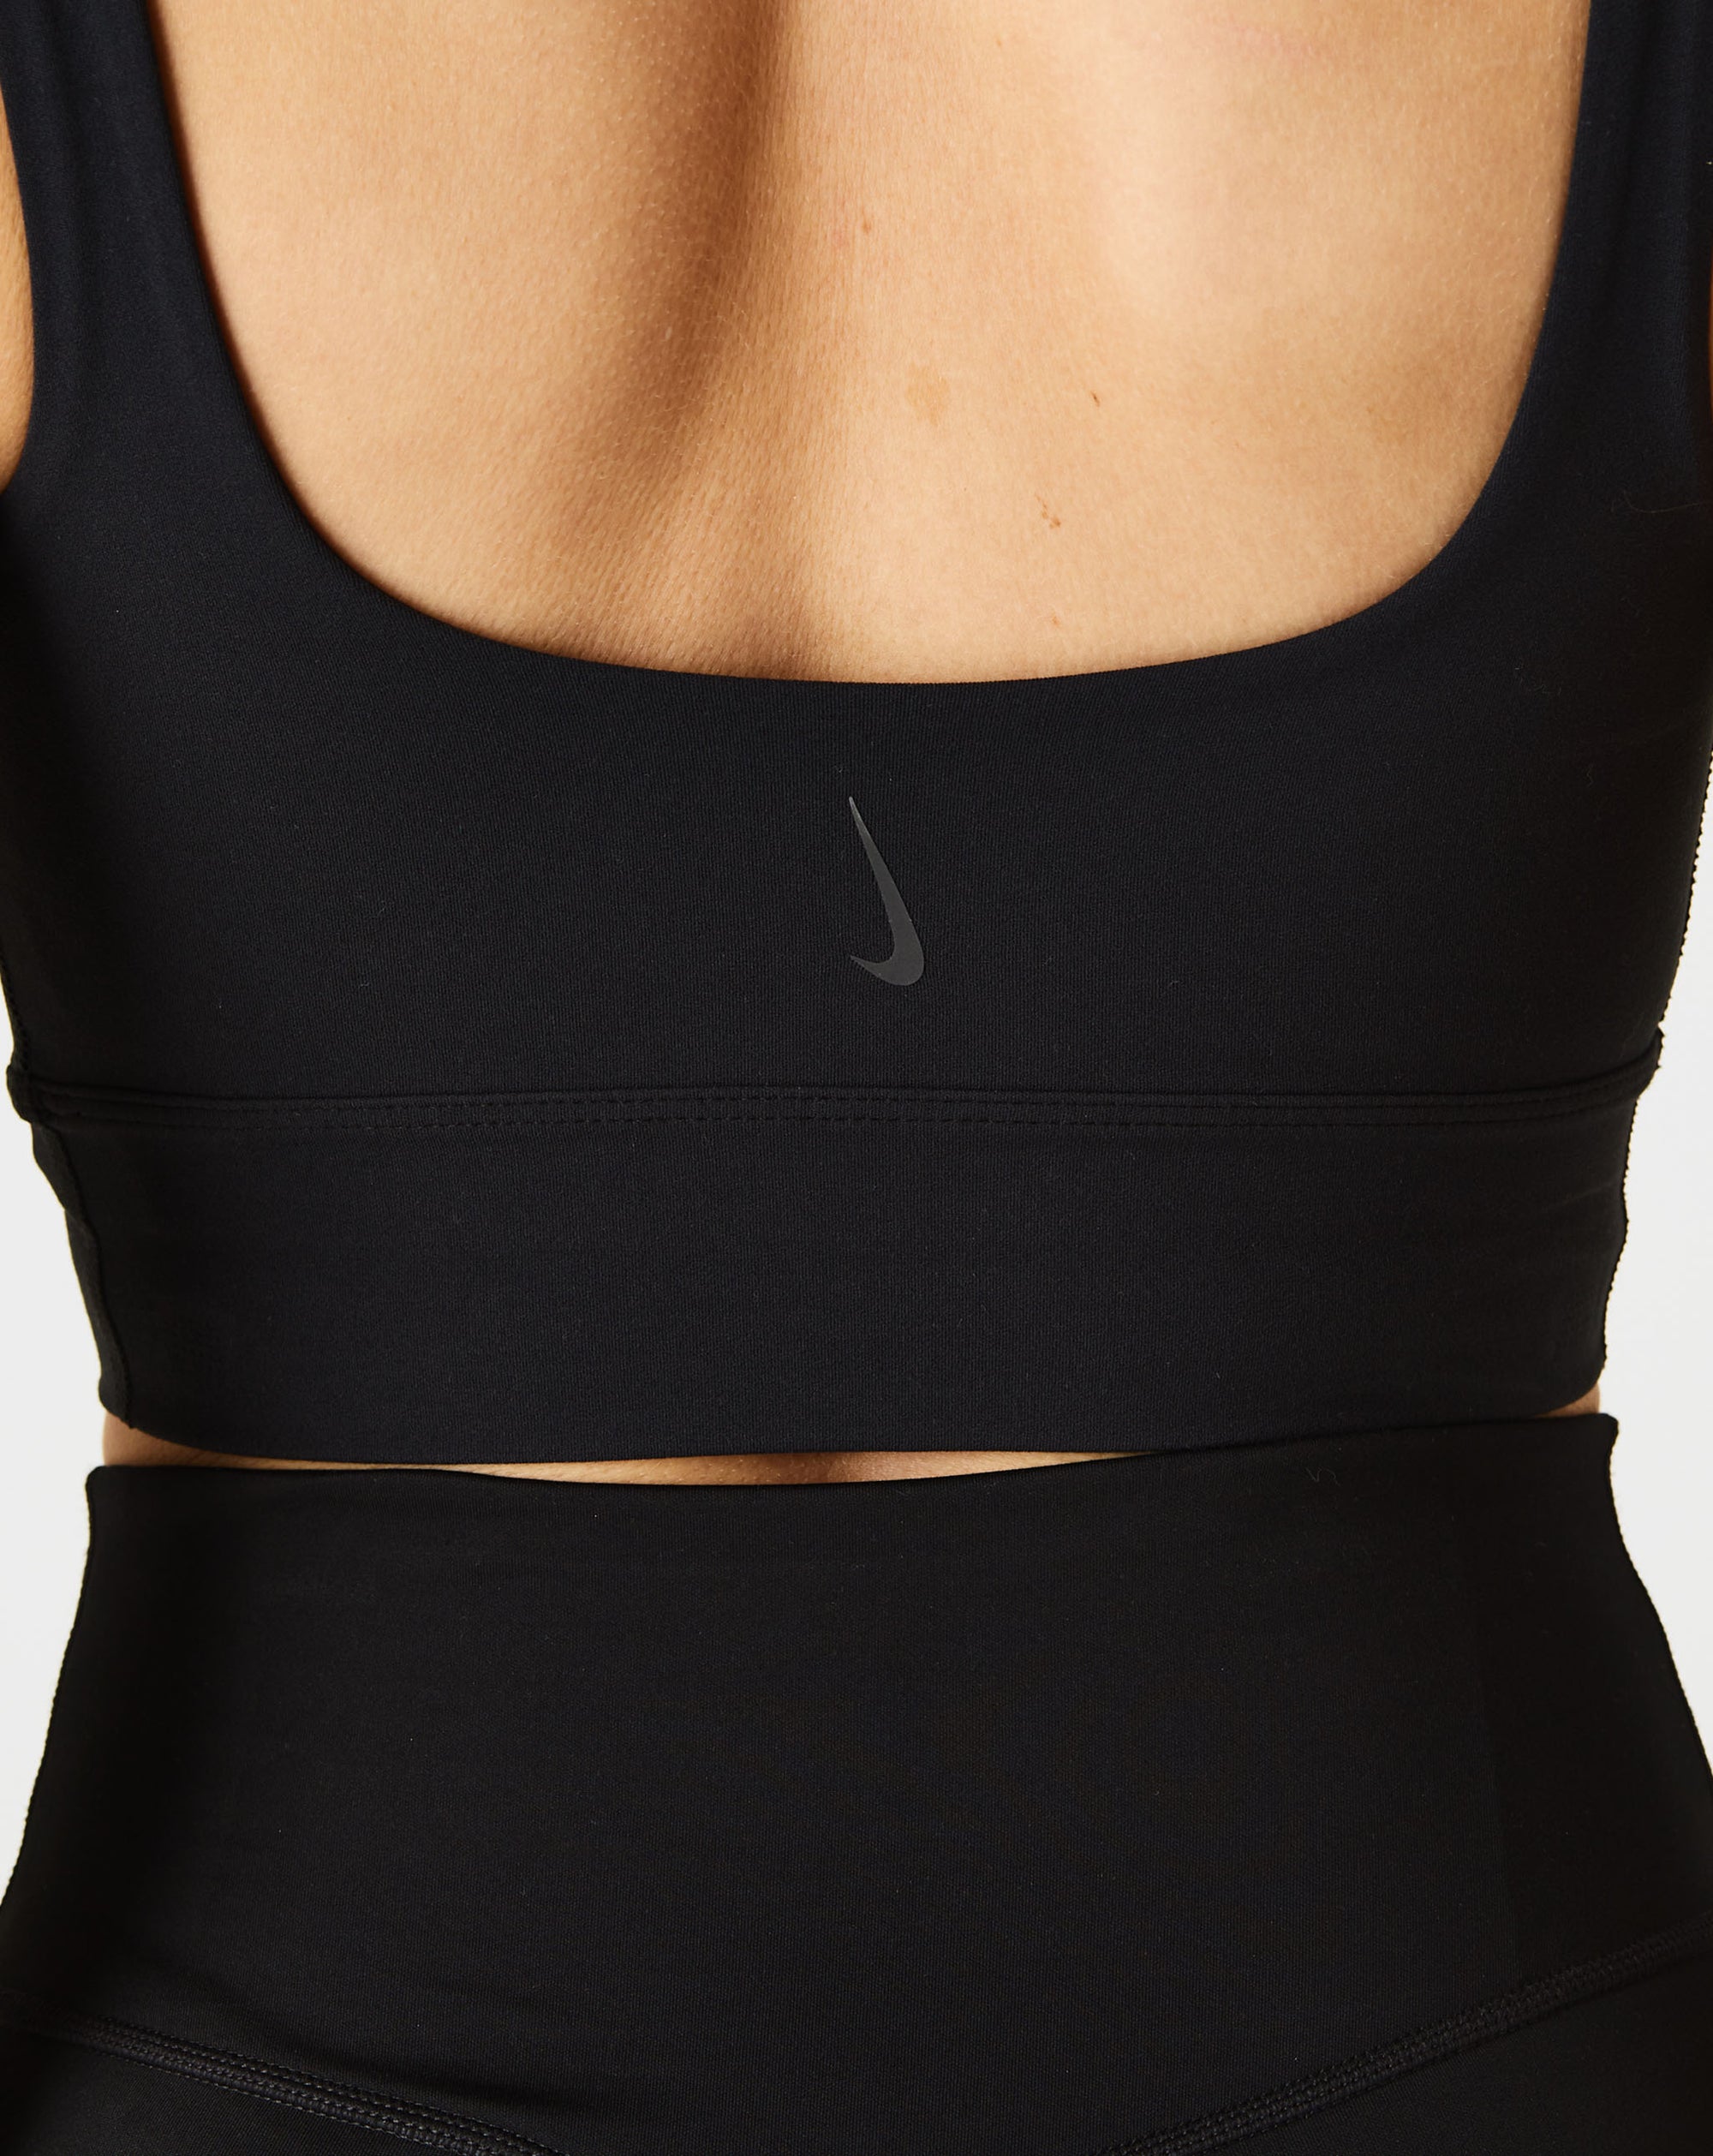 Nike Women's Yoga Luxe Bra - Rule of Next Apparel